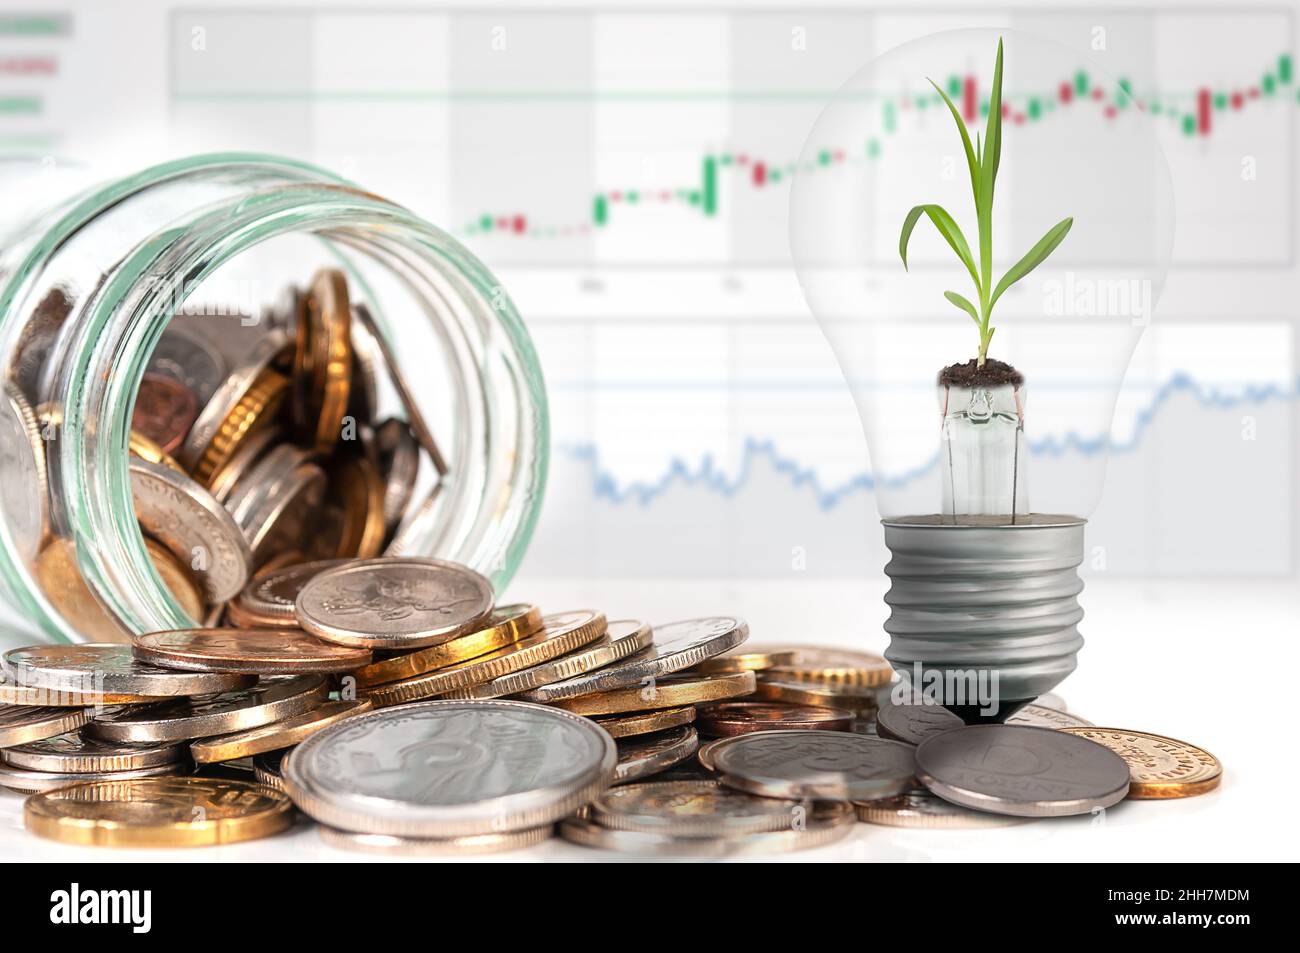 Vaso in vetro con monete e lampada con germoglio verde su sfondo grafico financico. Concetto bancario sicuro e redditizio, finanze domestiche. Foto Stock